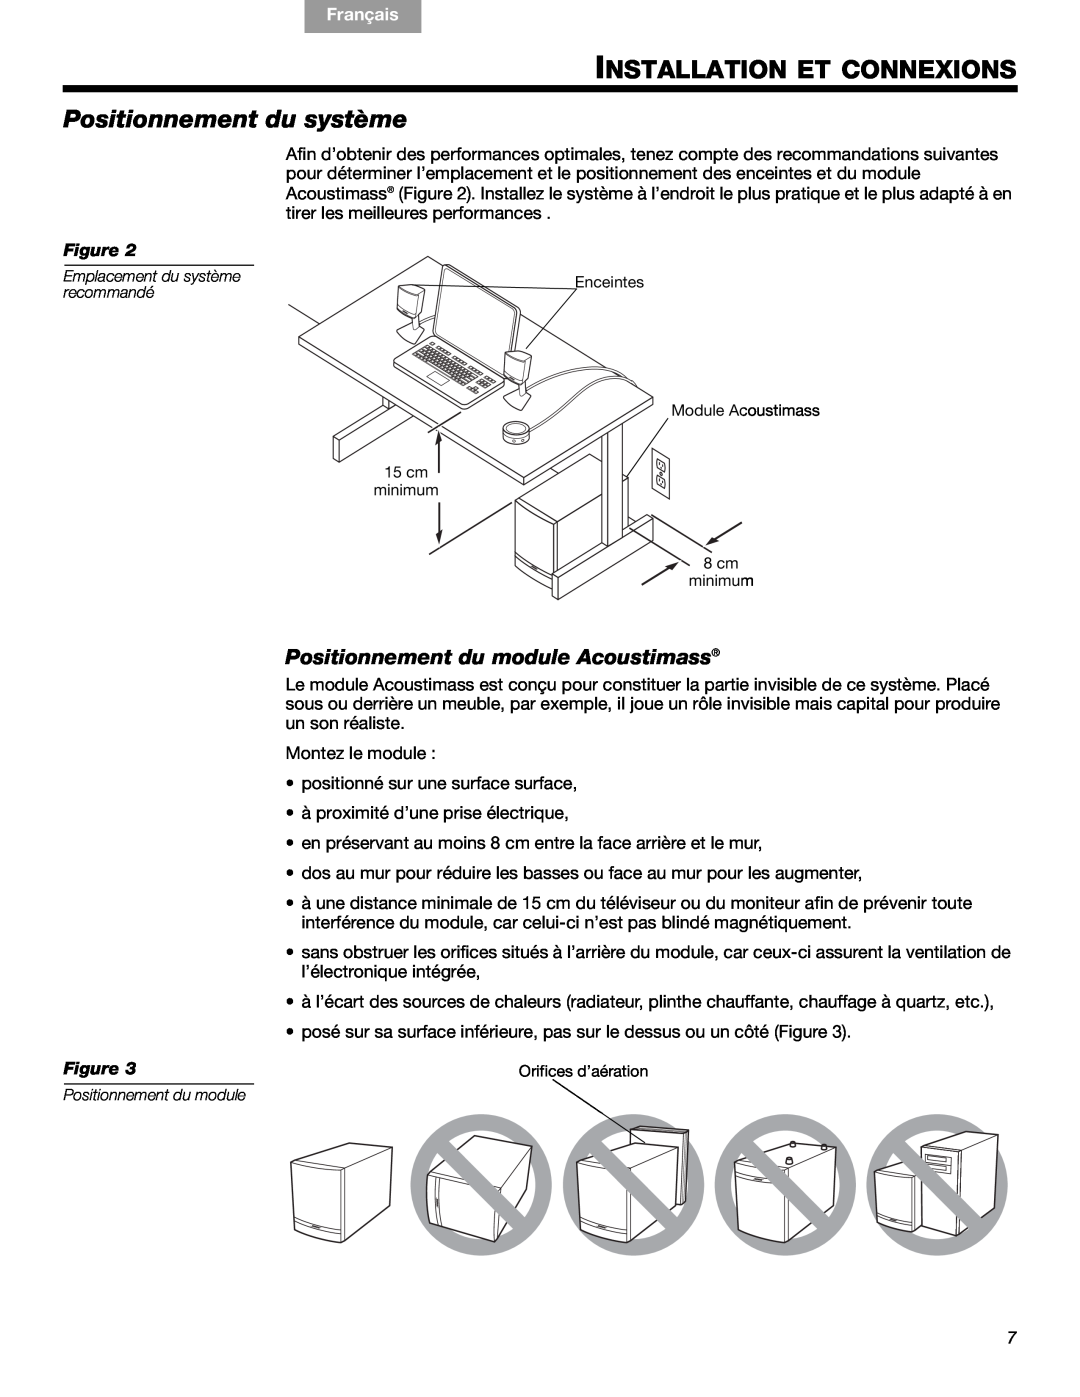 Bose 3 manual Installation Et Connexions, Positionnement du système, Positionnement du module Acoustimass, English Español 